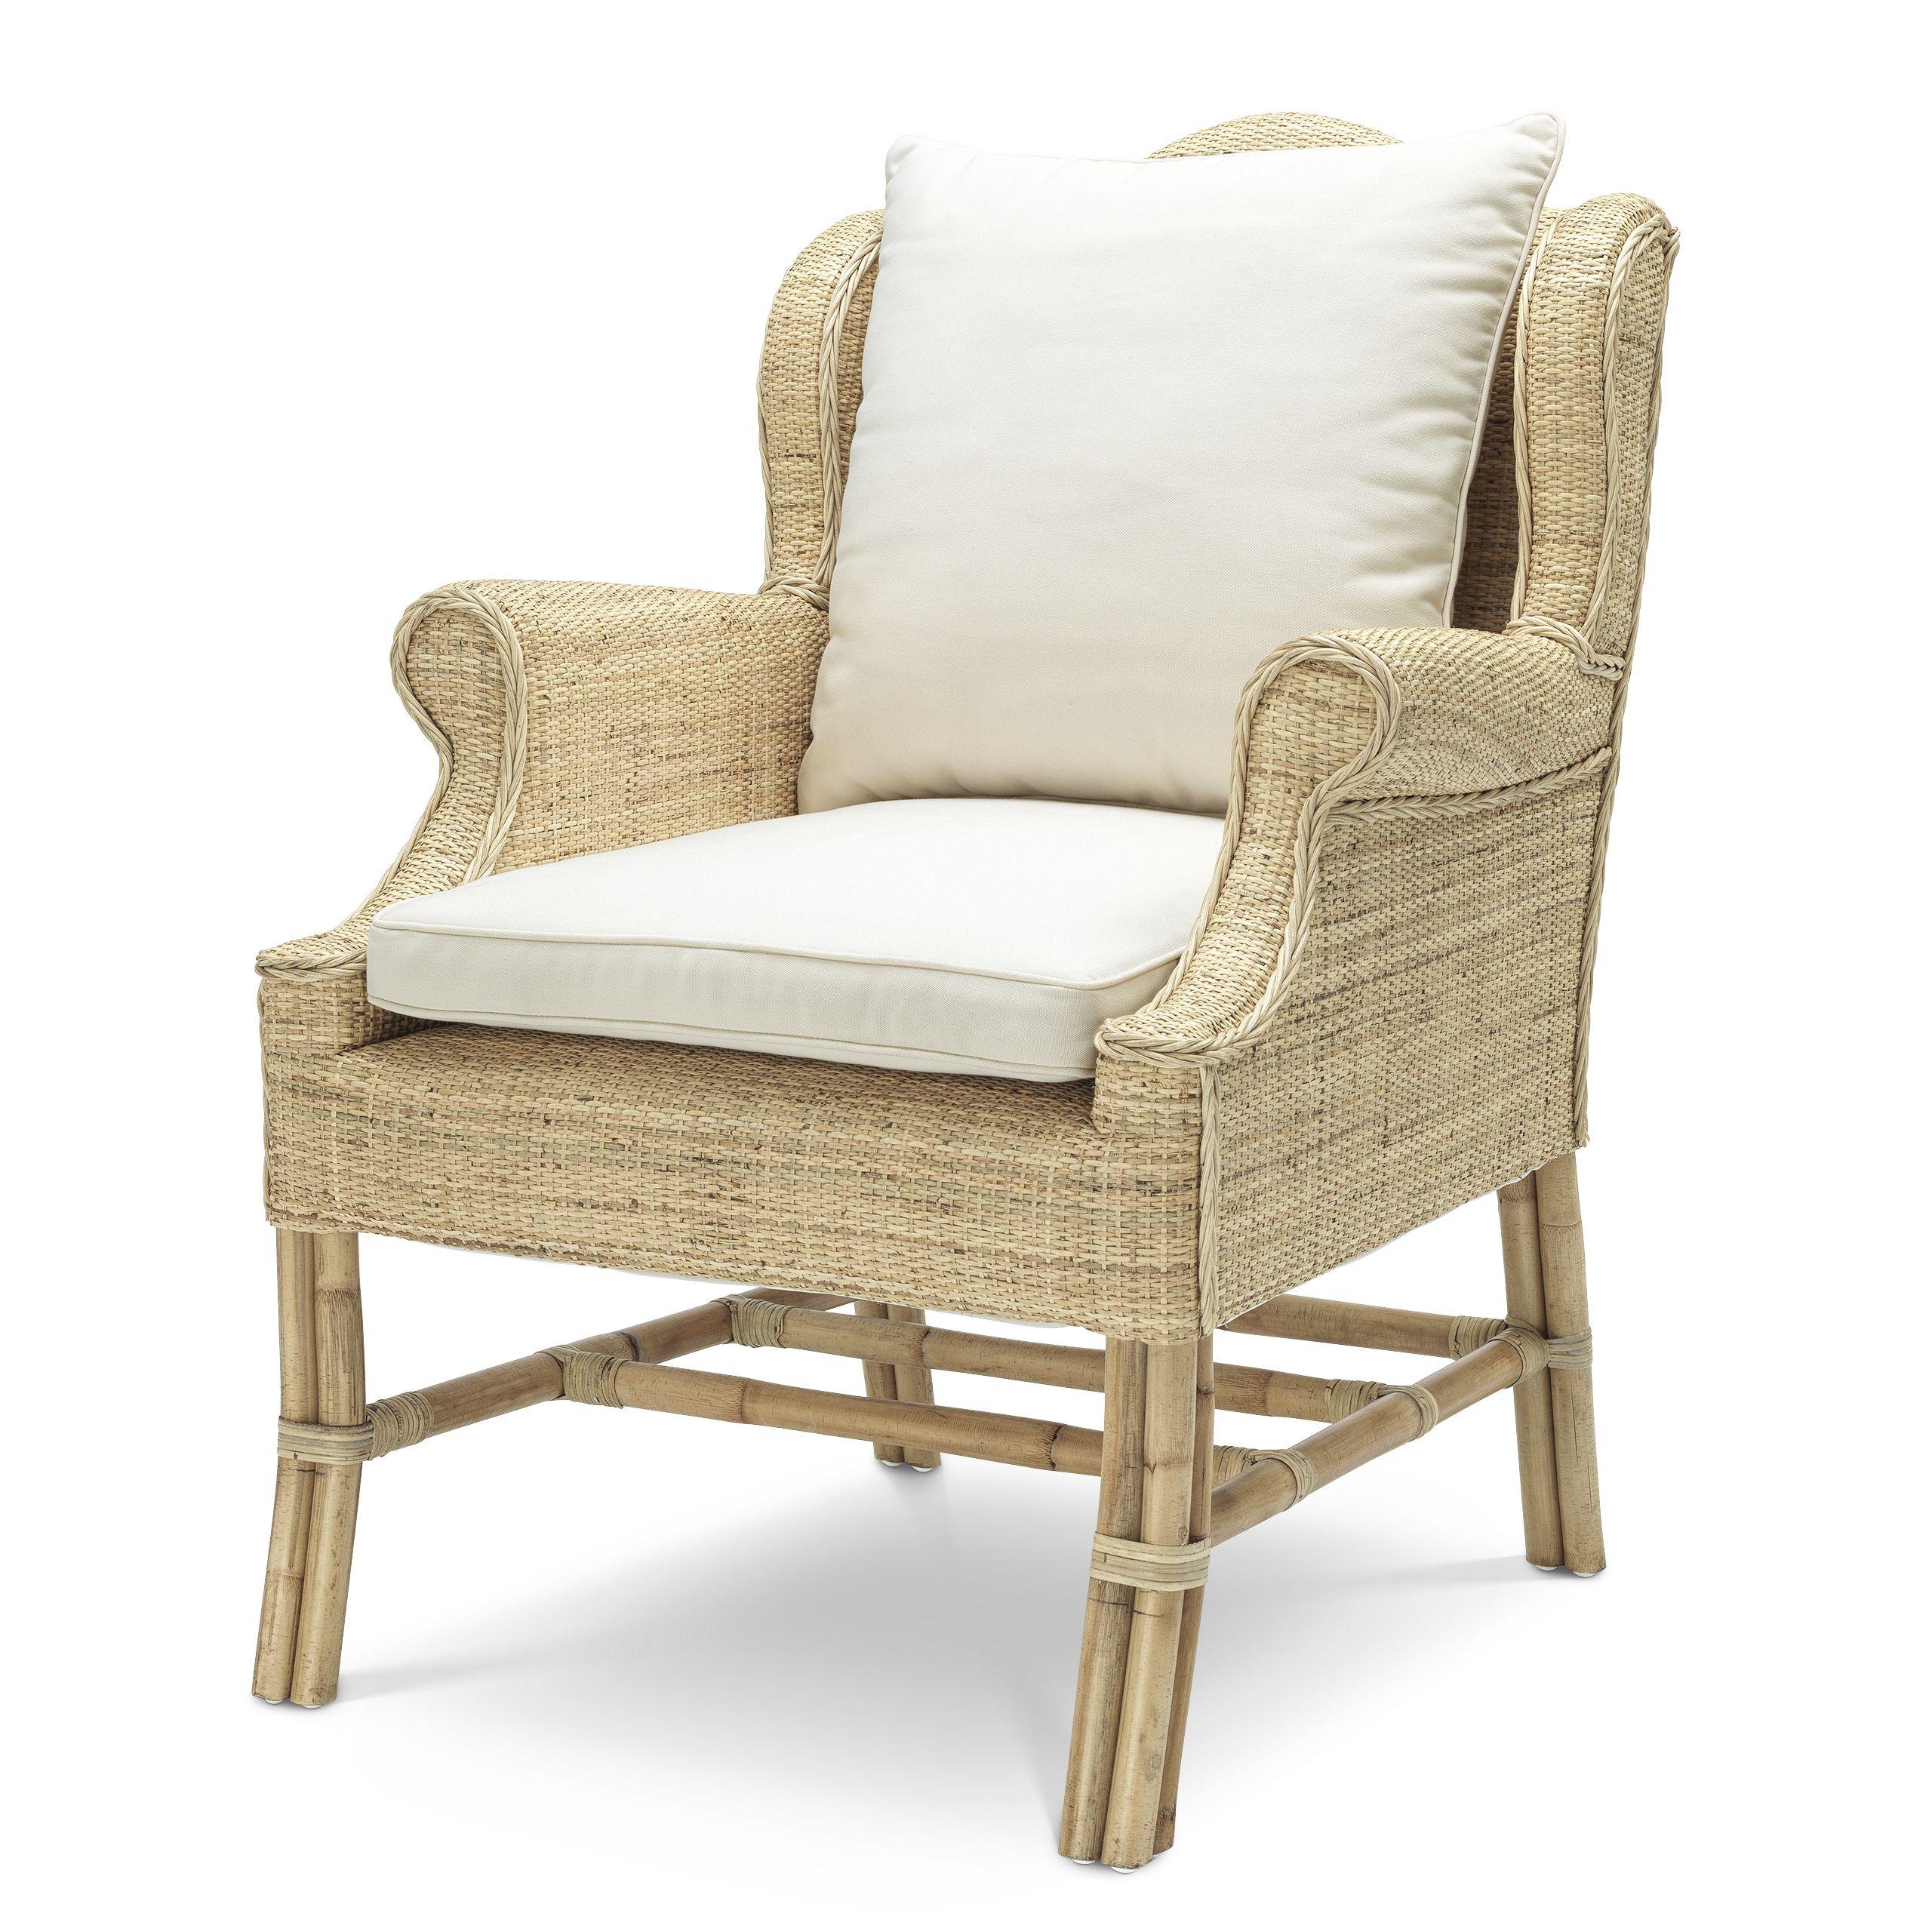 Купить Кресло Chair Porto Ercole в интернет-магазине roooms.ru